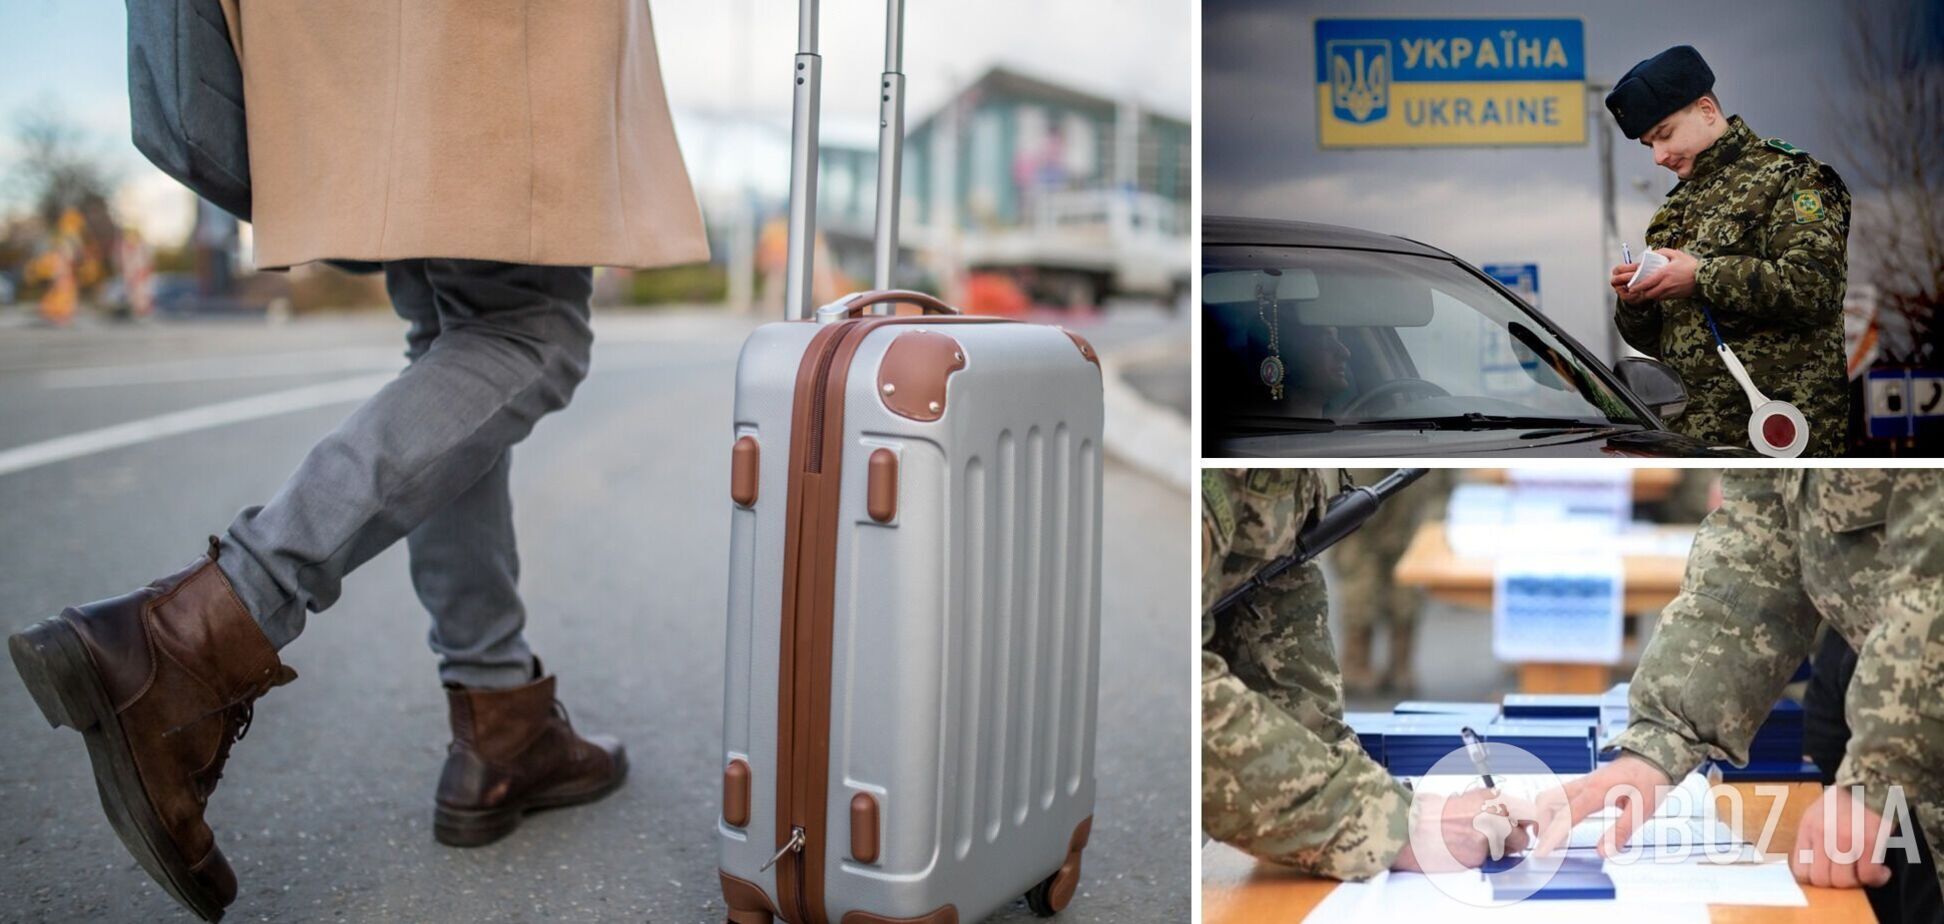 Мобилизация в Украине: могут ли снятые с воинского учета мужчины выехать за границу